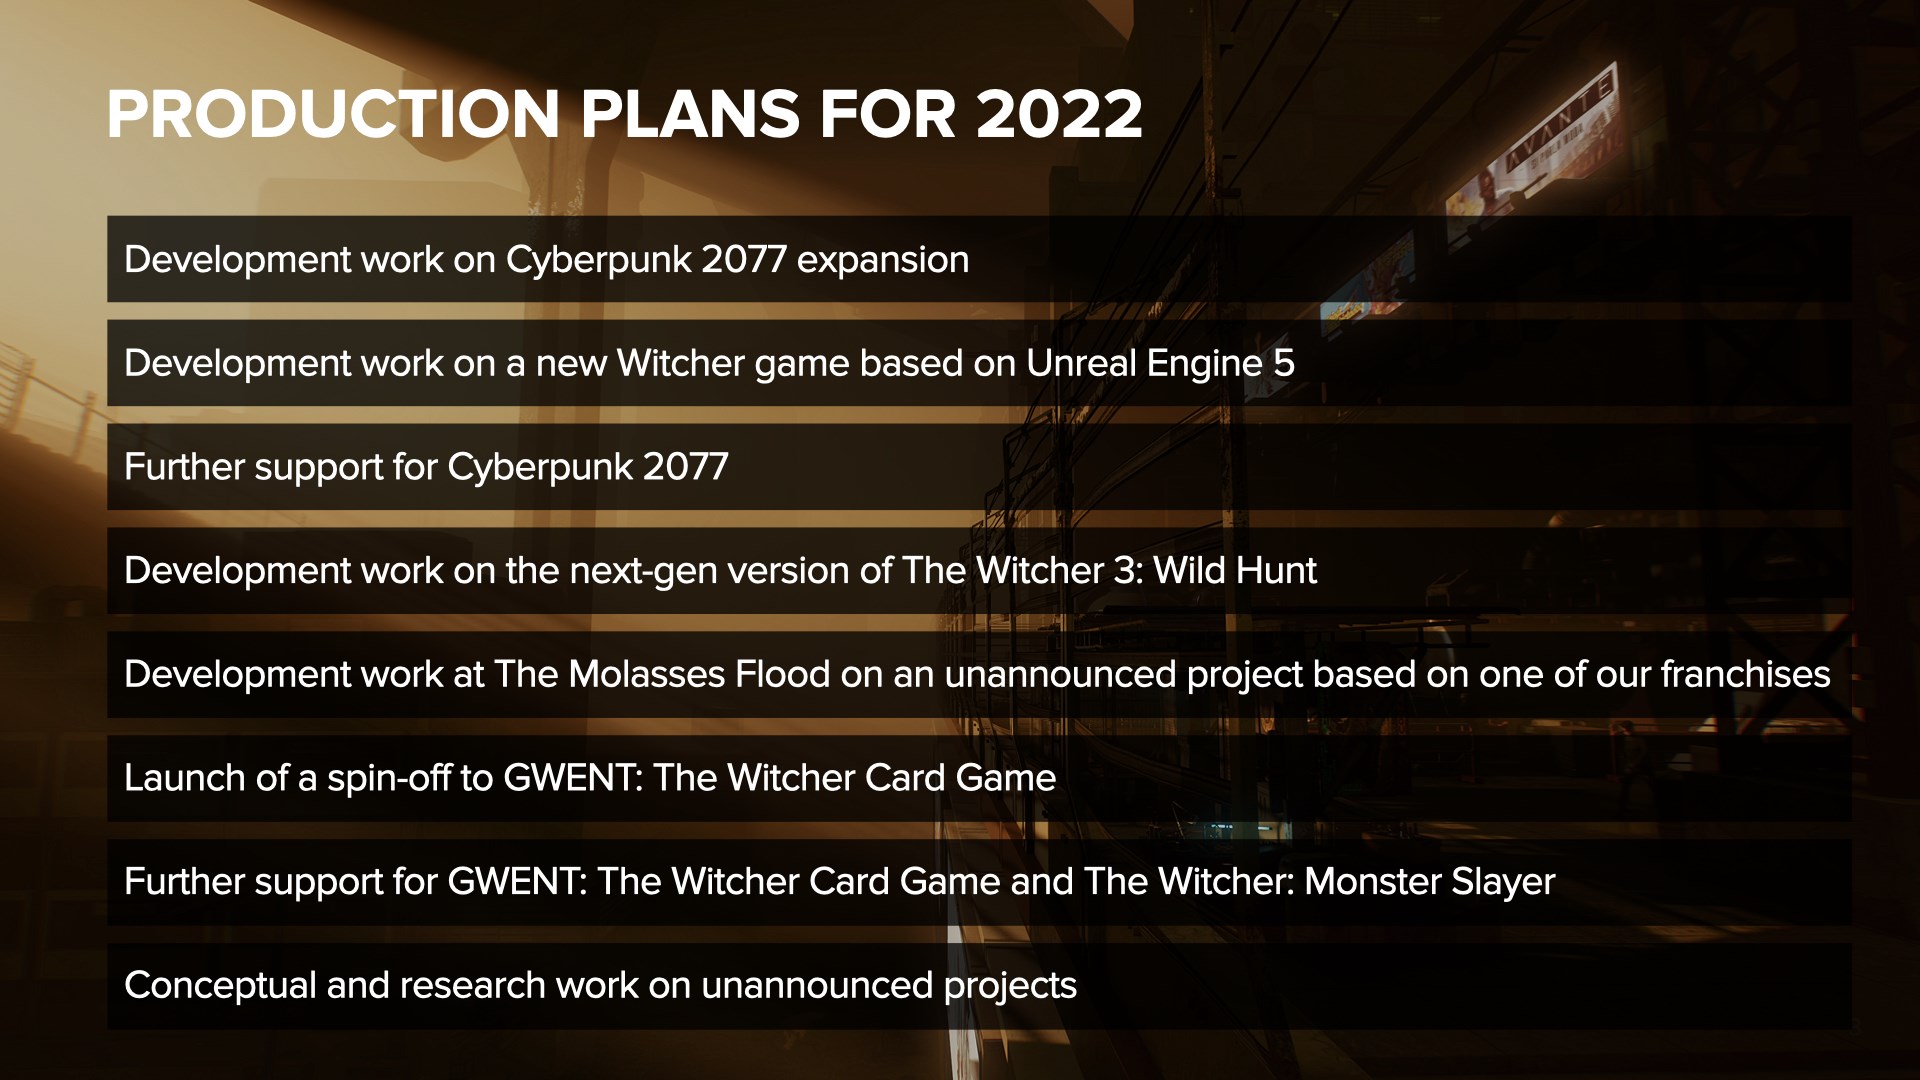 CD Projekt'in 2022 planları açıklandı